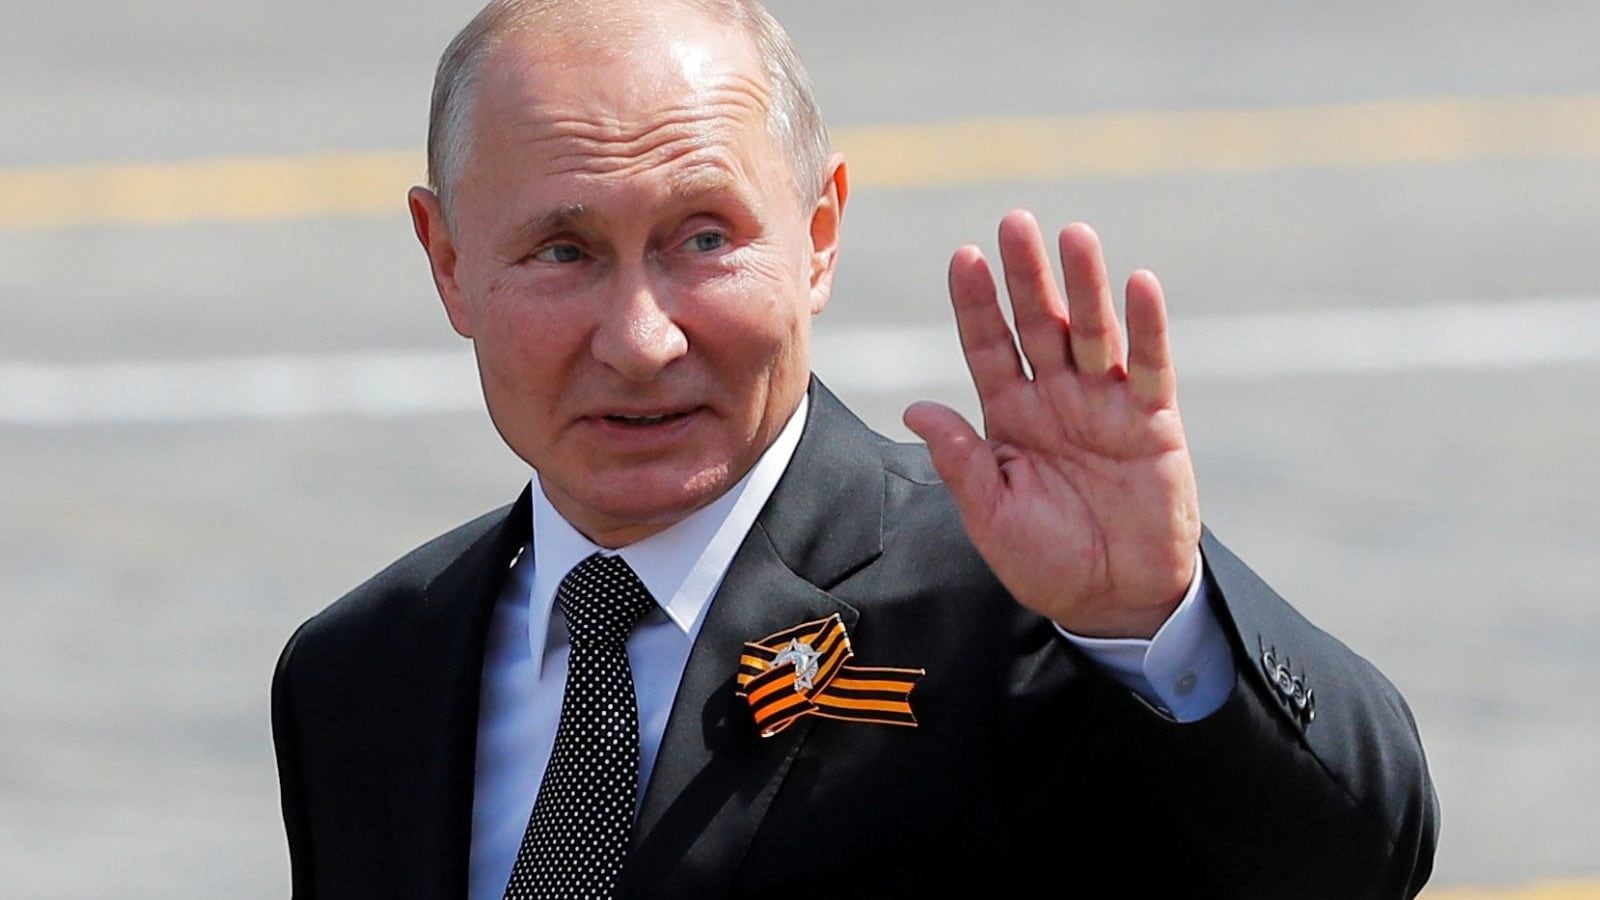 Daftar politisi terkaya di dunia – presiden Rusia terus menempati urutan teratas